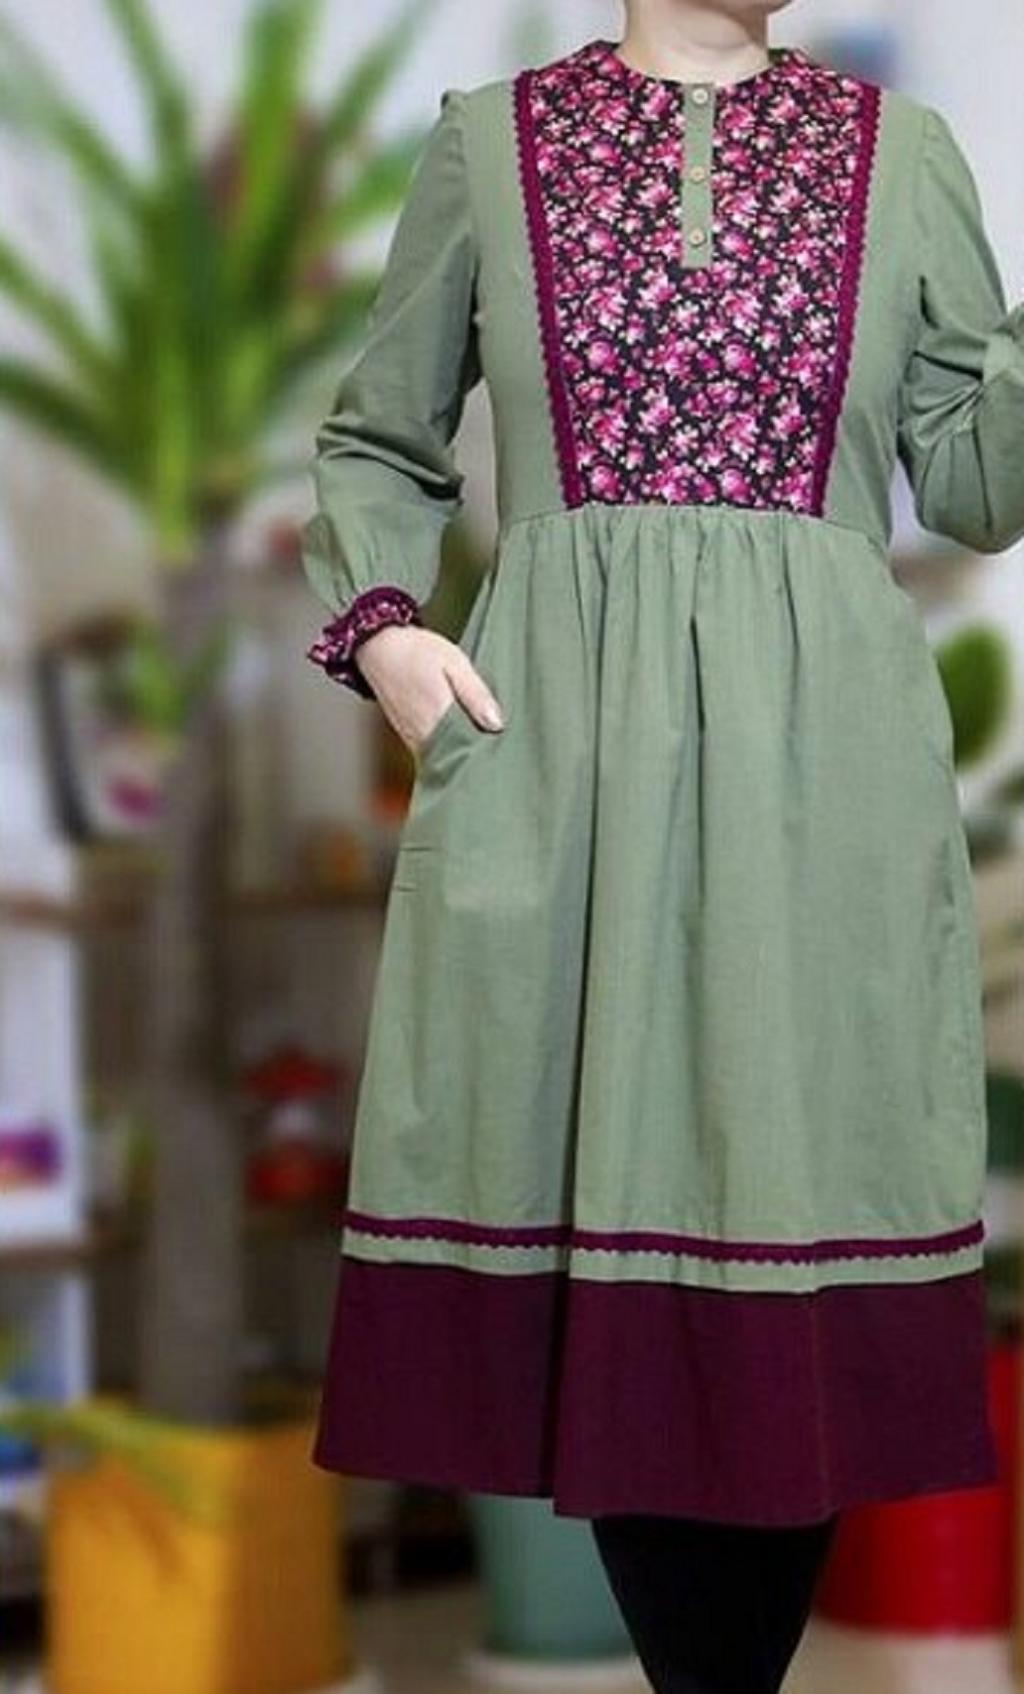 لباس خانگی برای عید اینستاگرام 3